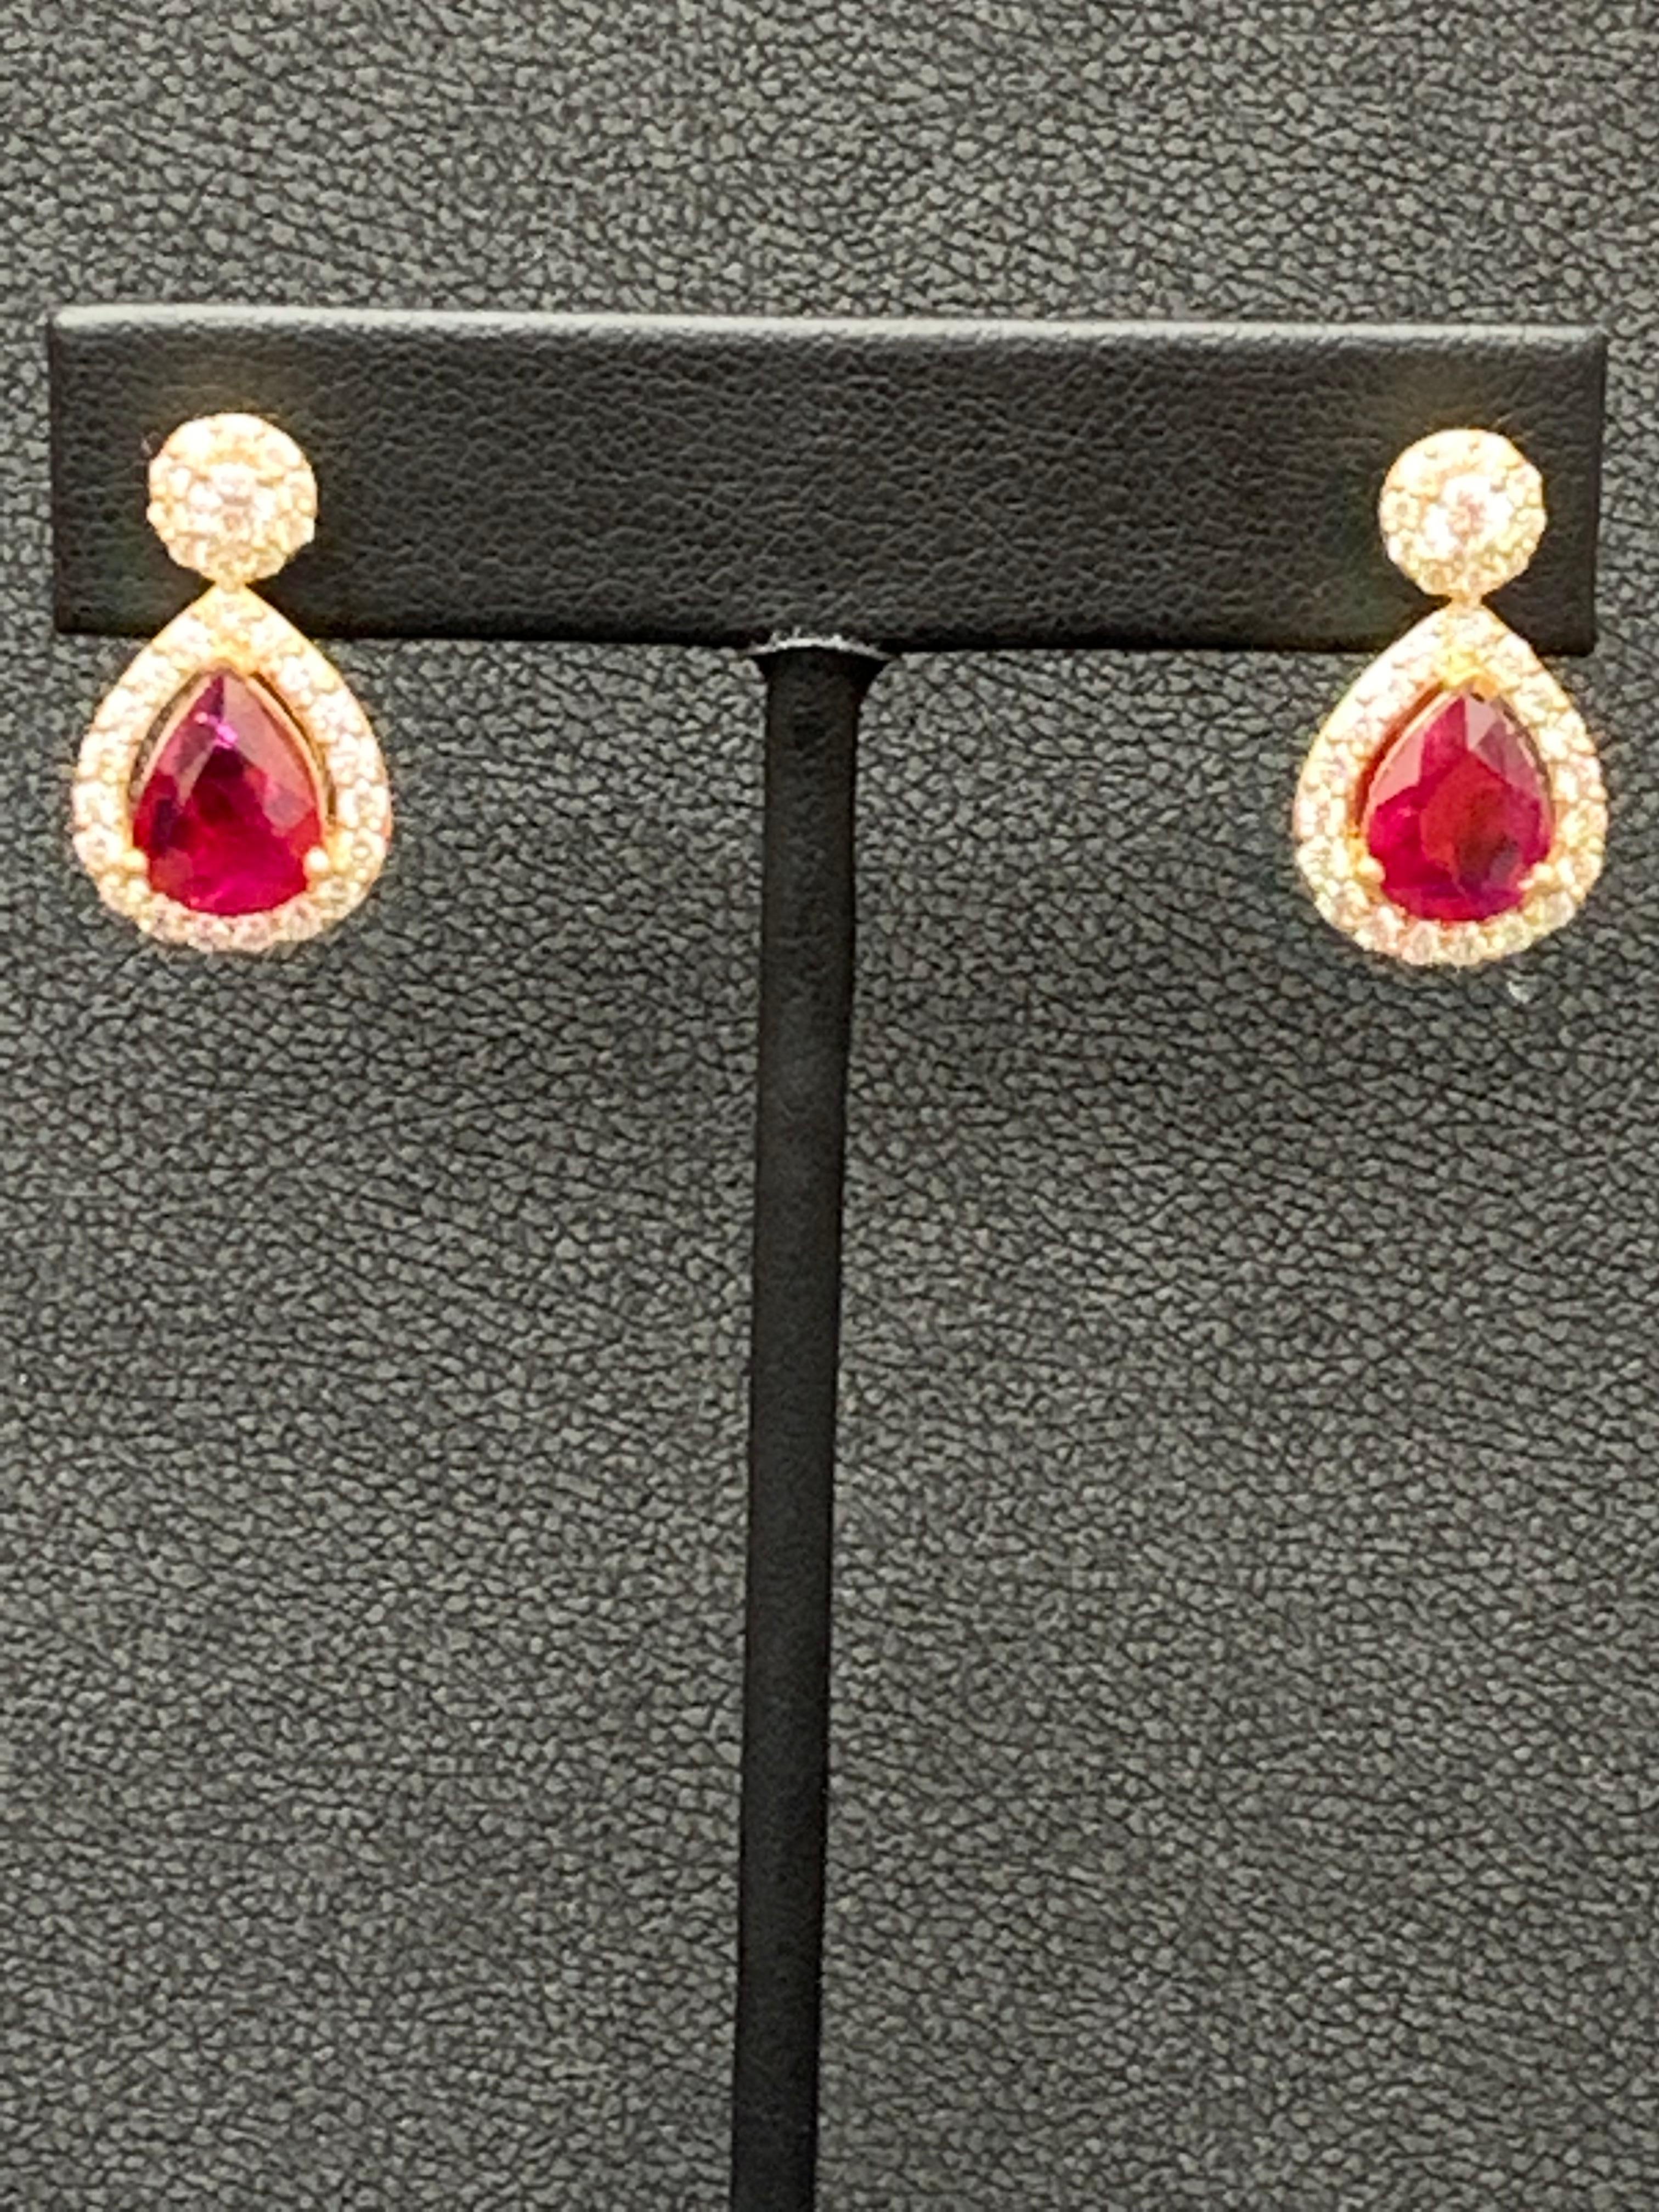 3.56 Carat of Pear Shape Ruby Diamond Drop Earrings in 18K Yellow Gold For Sale 7